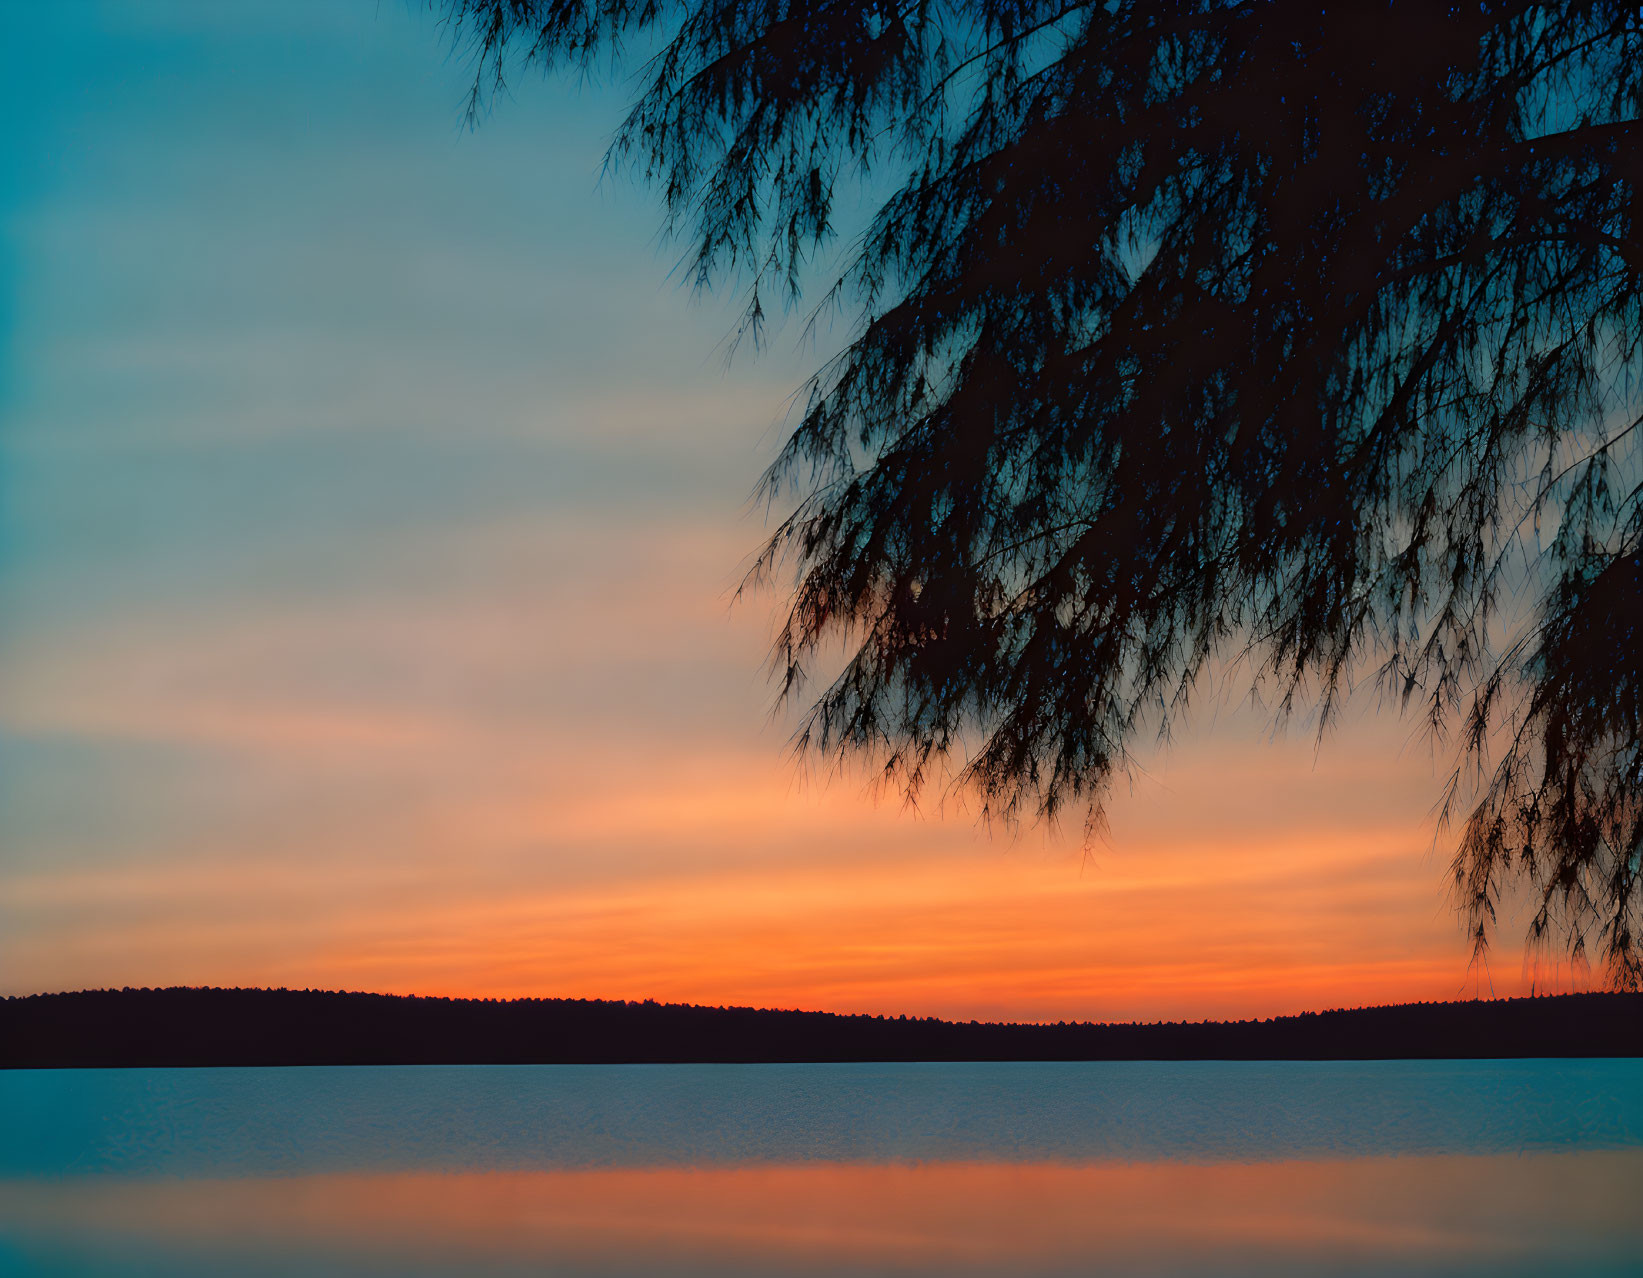 Serenity's Embrace: Sunset Reflections on a Tranqu